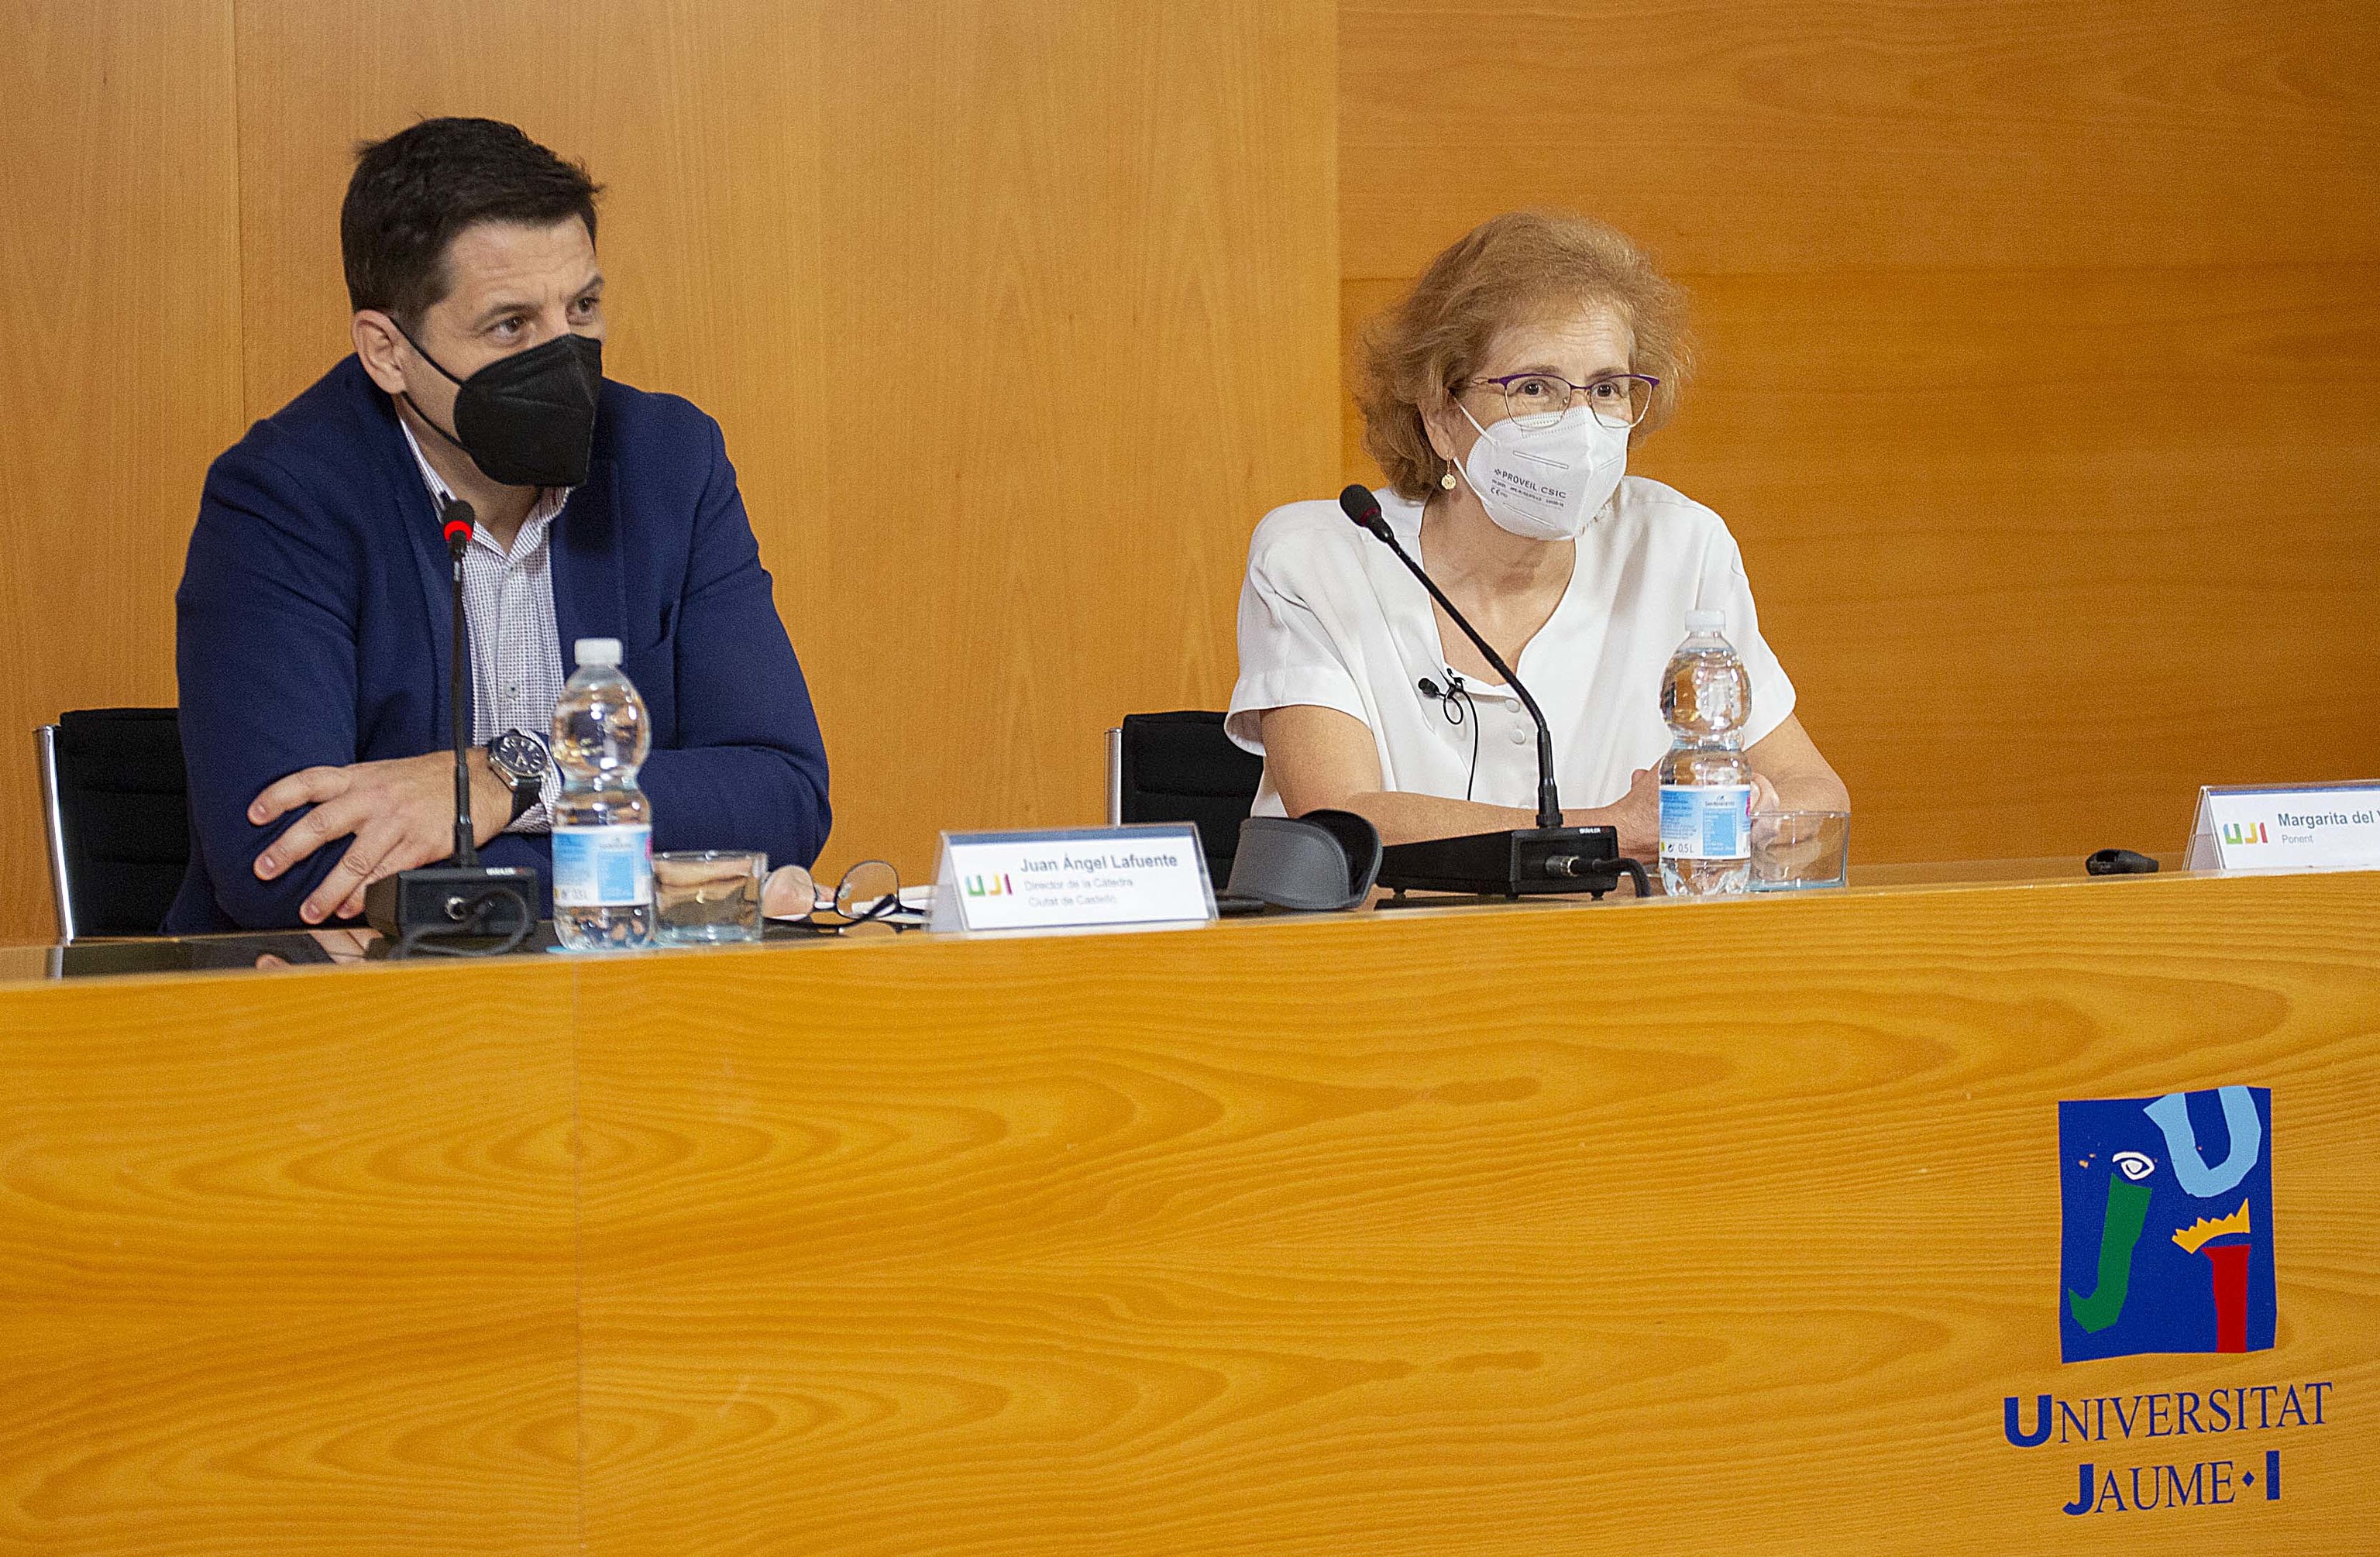 Juan ngel Lafuente y Margarita del Val, este martes, poco antes de la charla en la UJI.